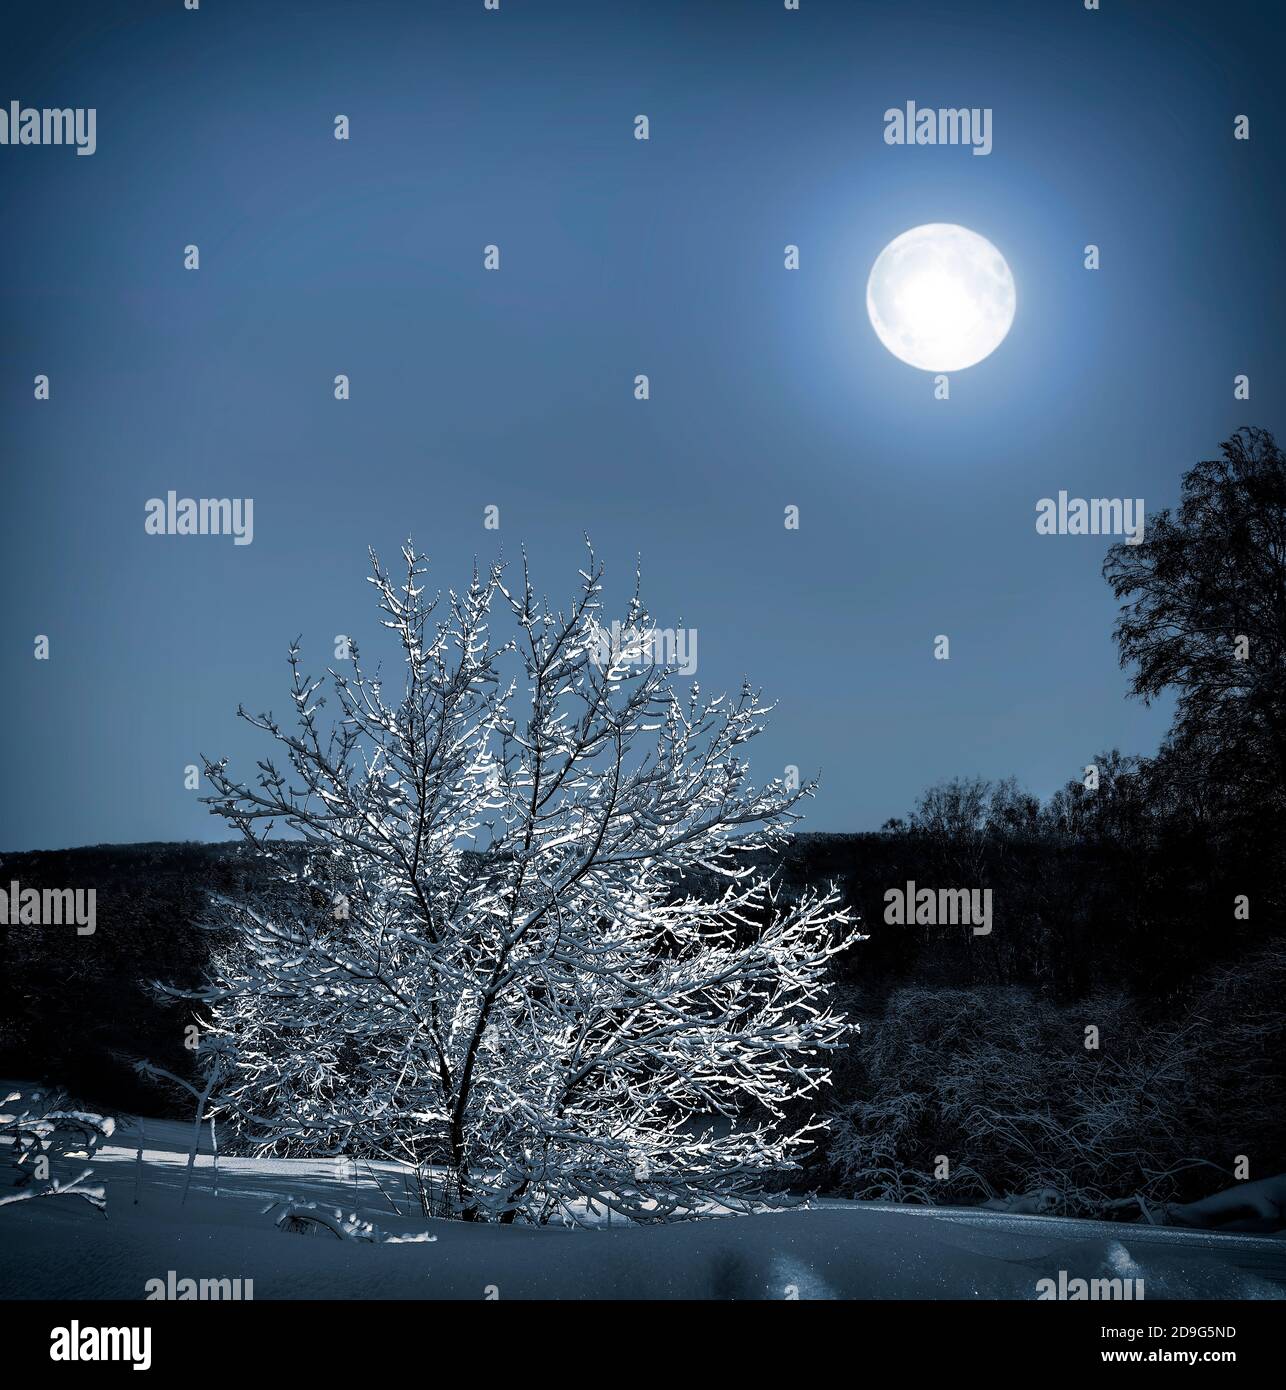 Albero solitario con neve coperta di luna - meraviglioso paesaggio notturno invernale. La luna piena sulla foresta illumina l'albero solitario sul prato innevato Foto Stock